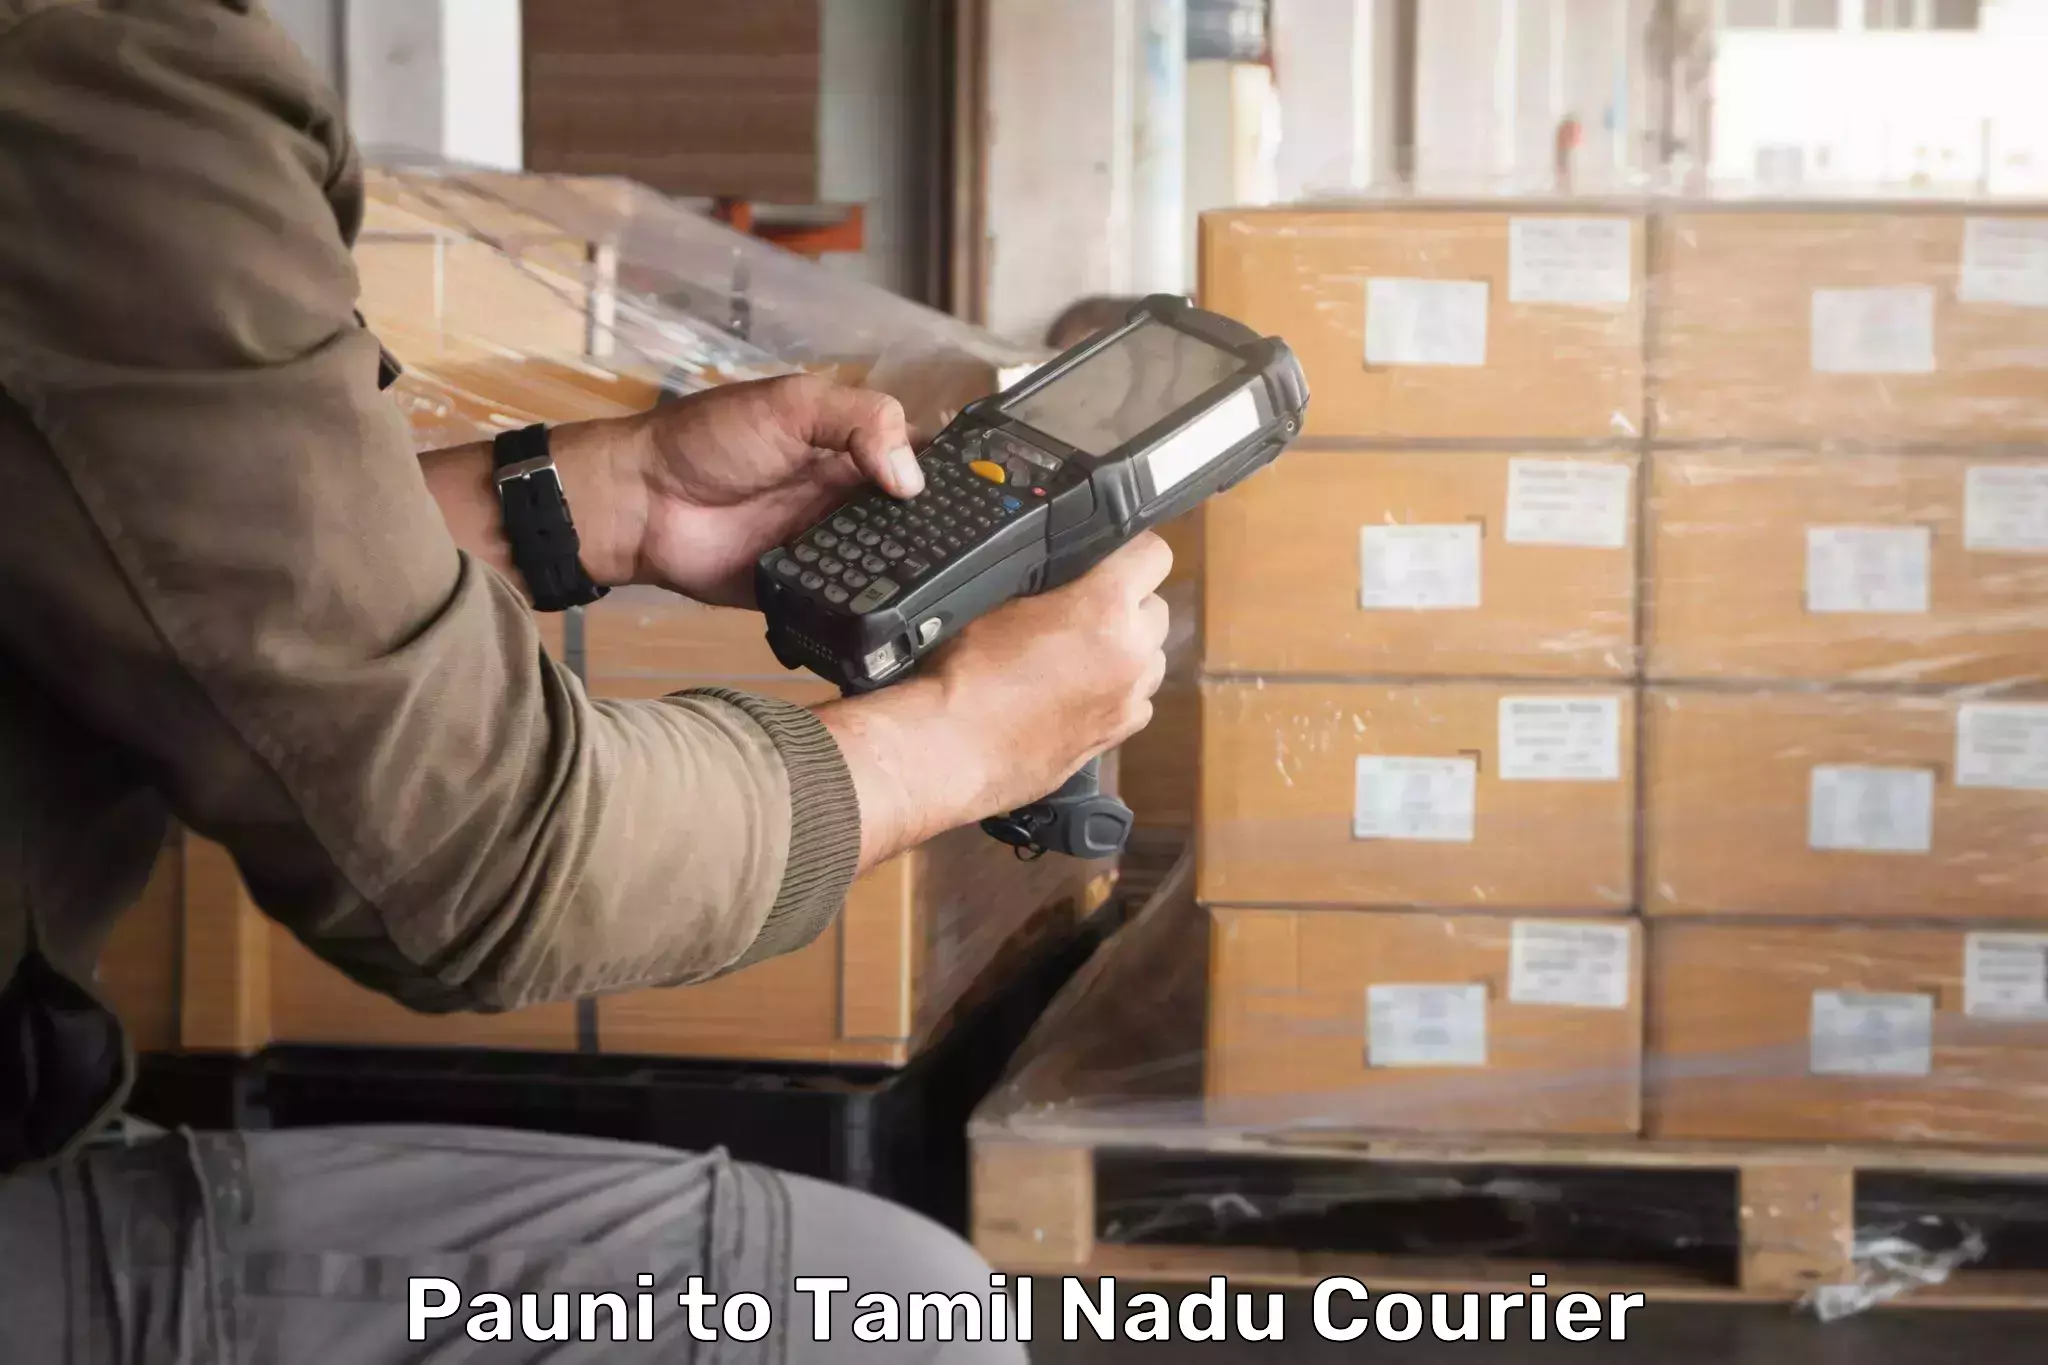 Reliable parcel services Pauni to Tamil Nadu